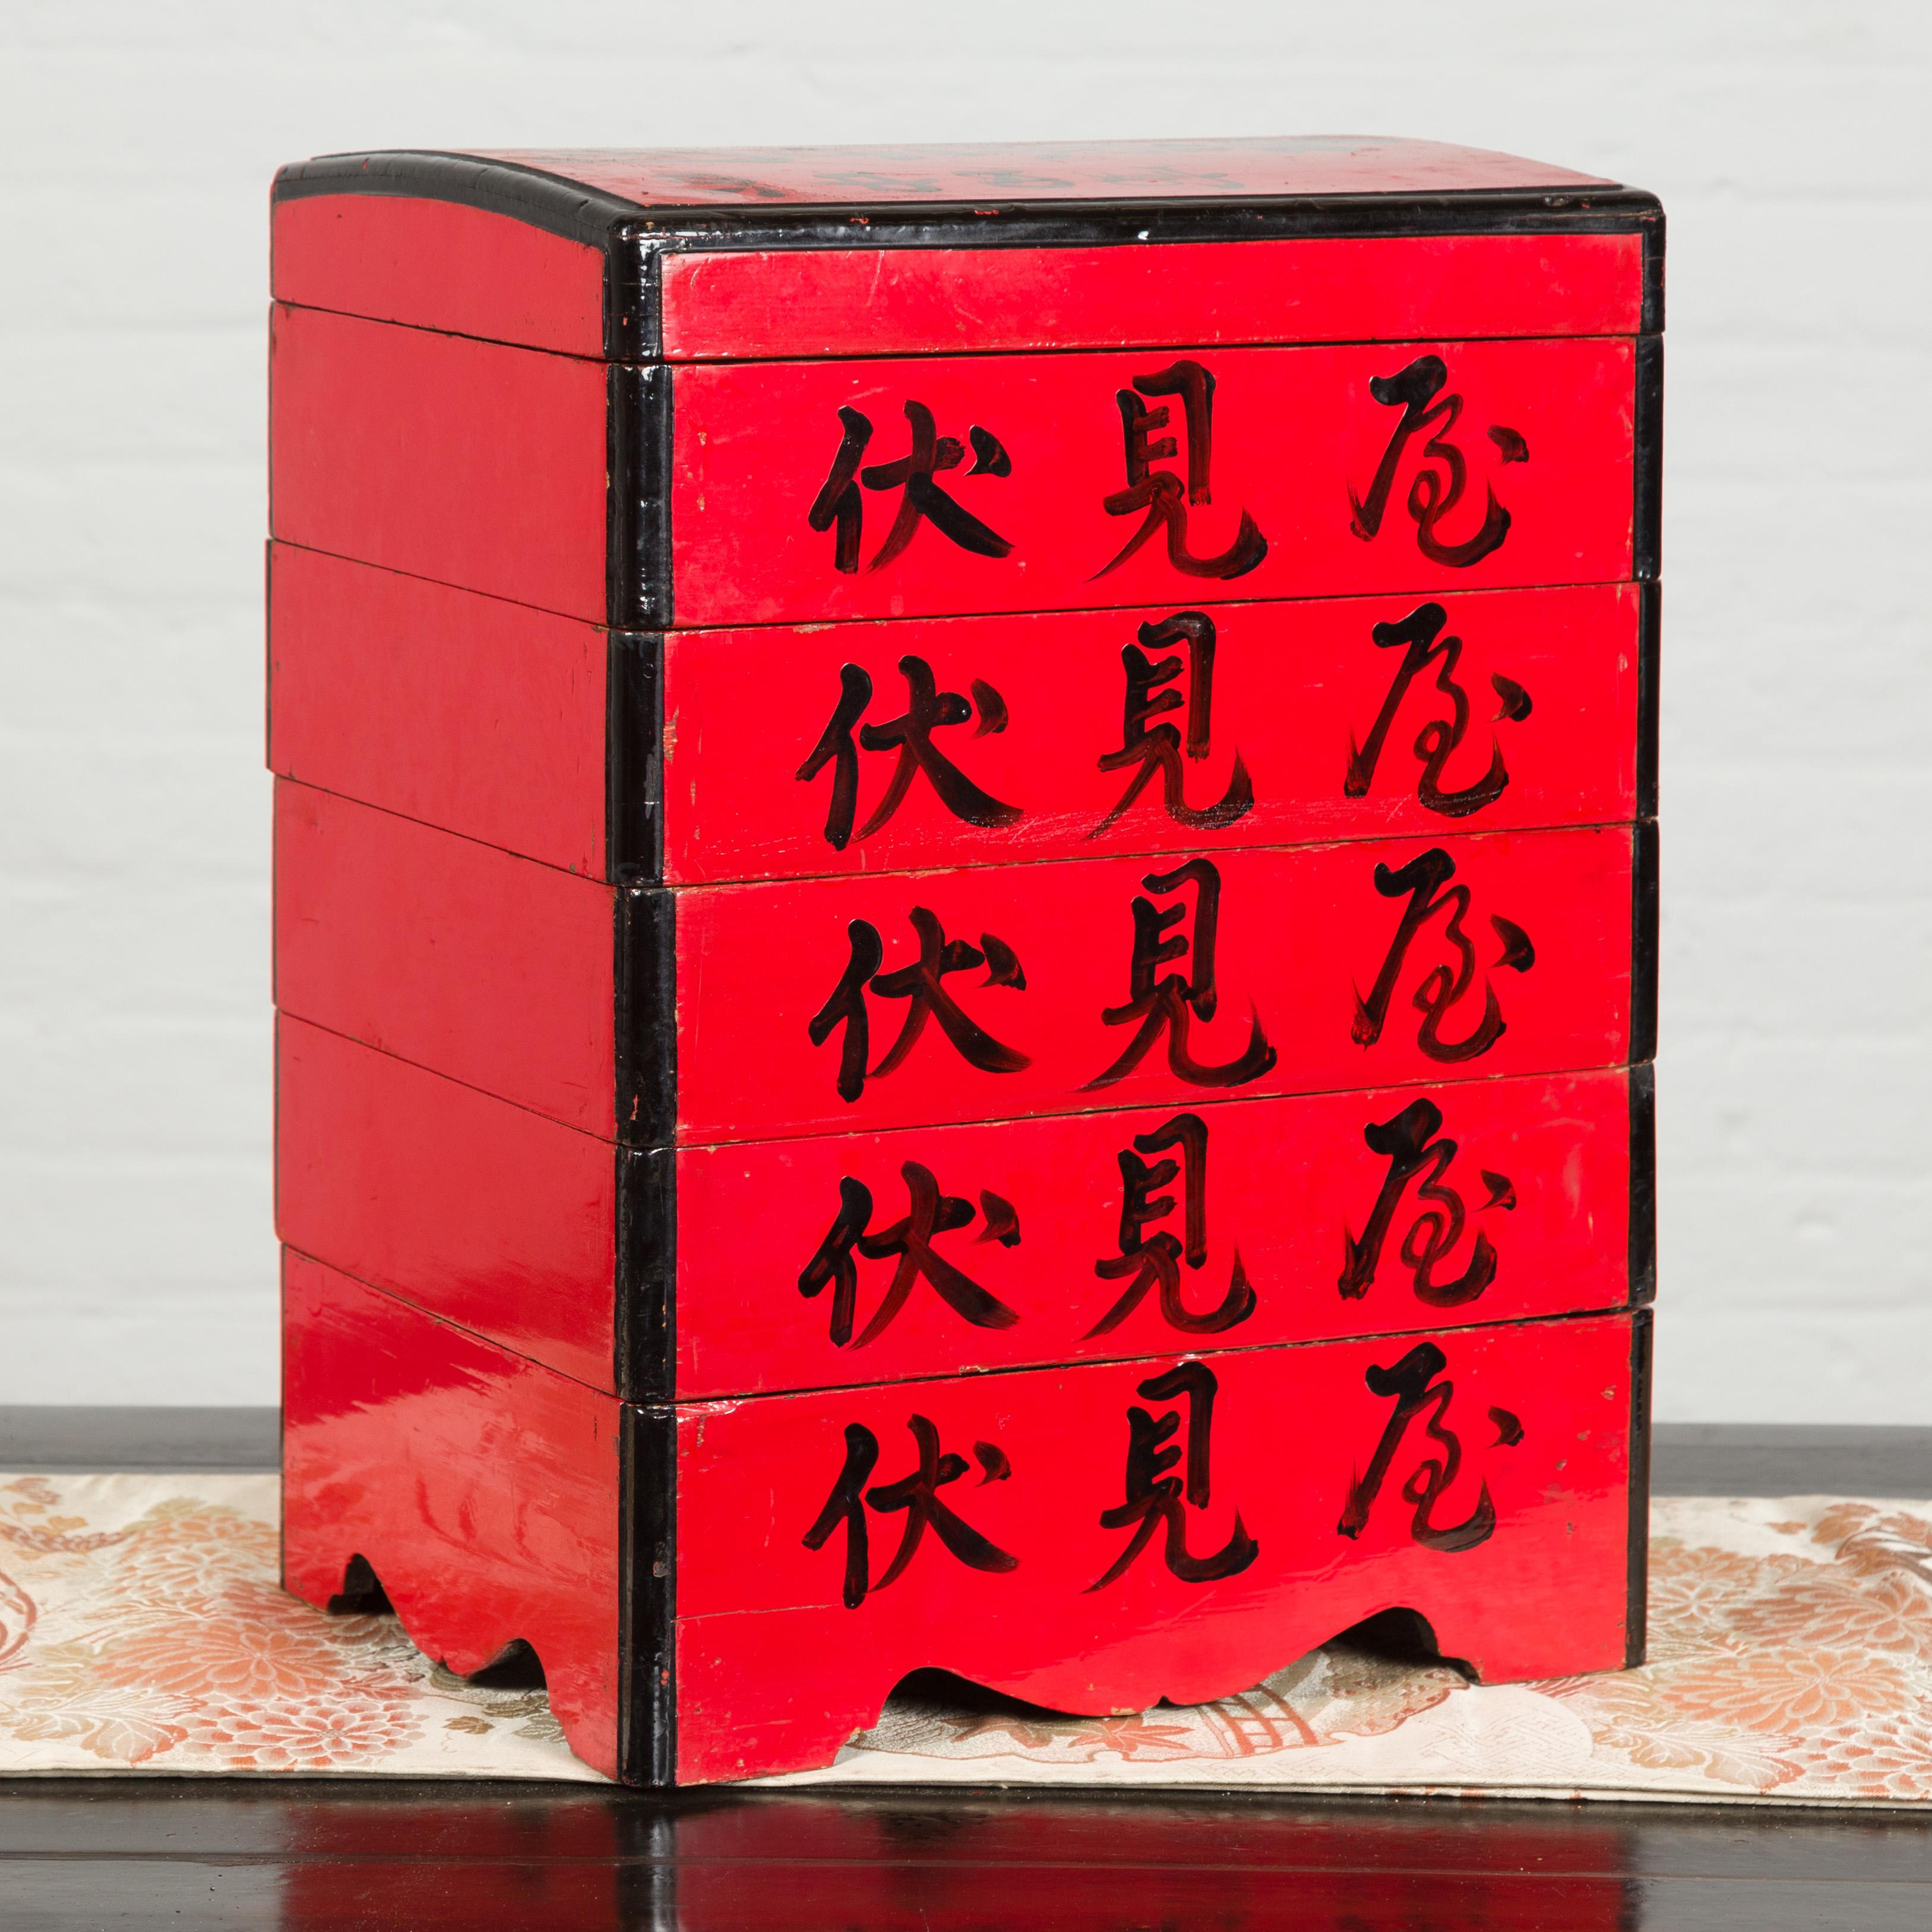 Boîte à aliments à étages de la période Taisho, datant du début du XXe siècle, en laque rouge et calligraphiée. Créée au Japon au début du XXe siècle, cette boîte à aliments laquée rouge présente un couvercle arqué au-dessus de cinq compartiments